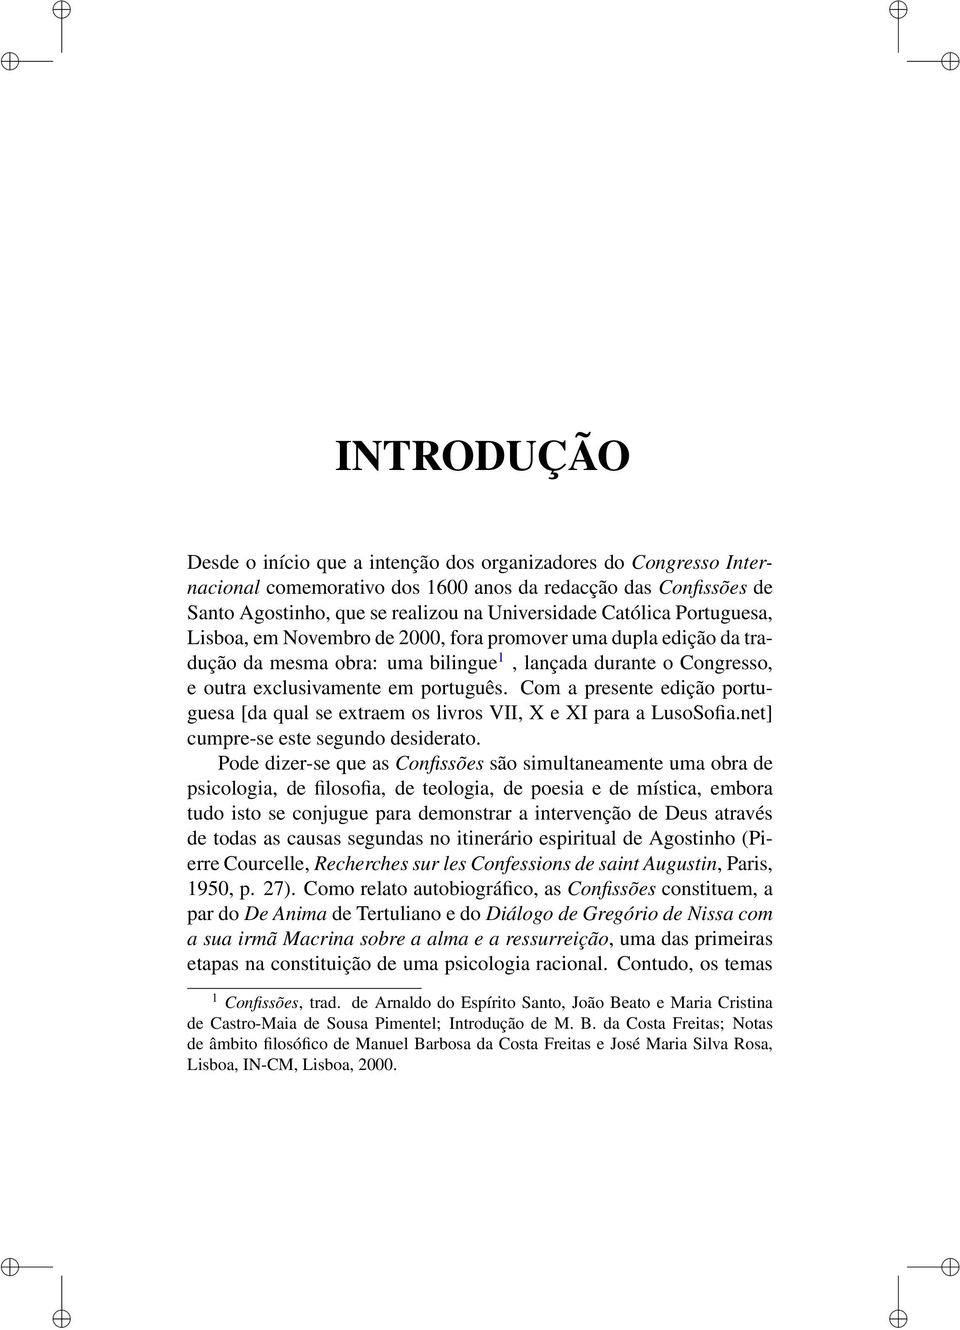 Com a presente edição portuguesa [da qual se extraem os livros VII, X e XI para a LusoSofia.net] cumpre-se este segundo desiderato.